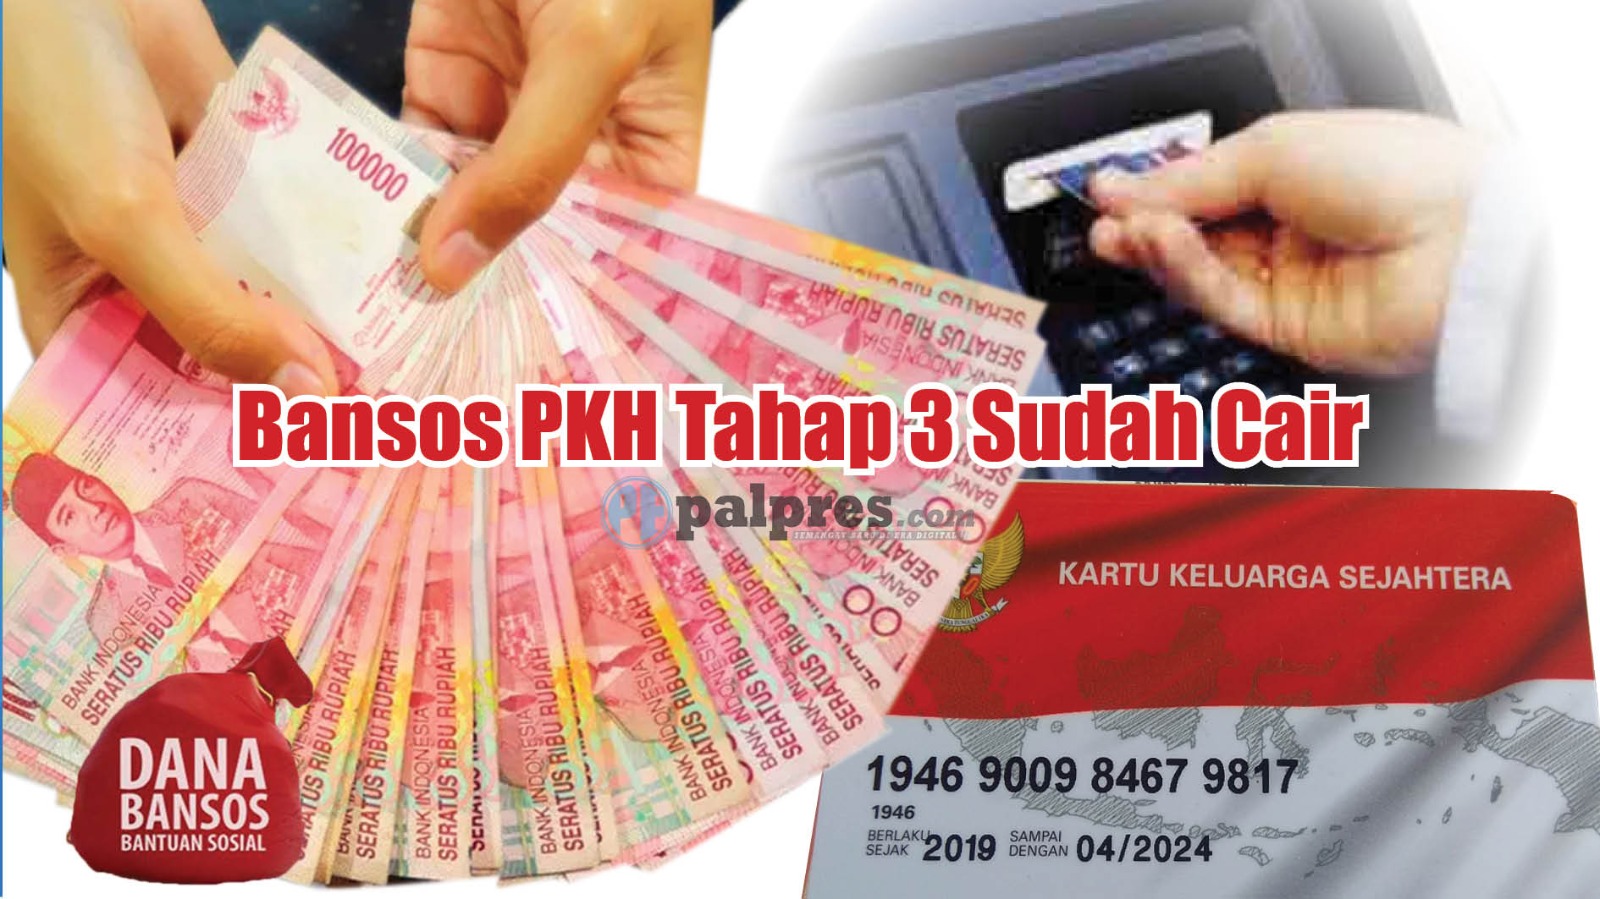 Bansos PKH Tahap 3 Sudah Cair, Cek Daftar Daerah Penerima di Sini!